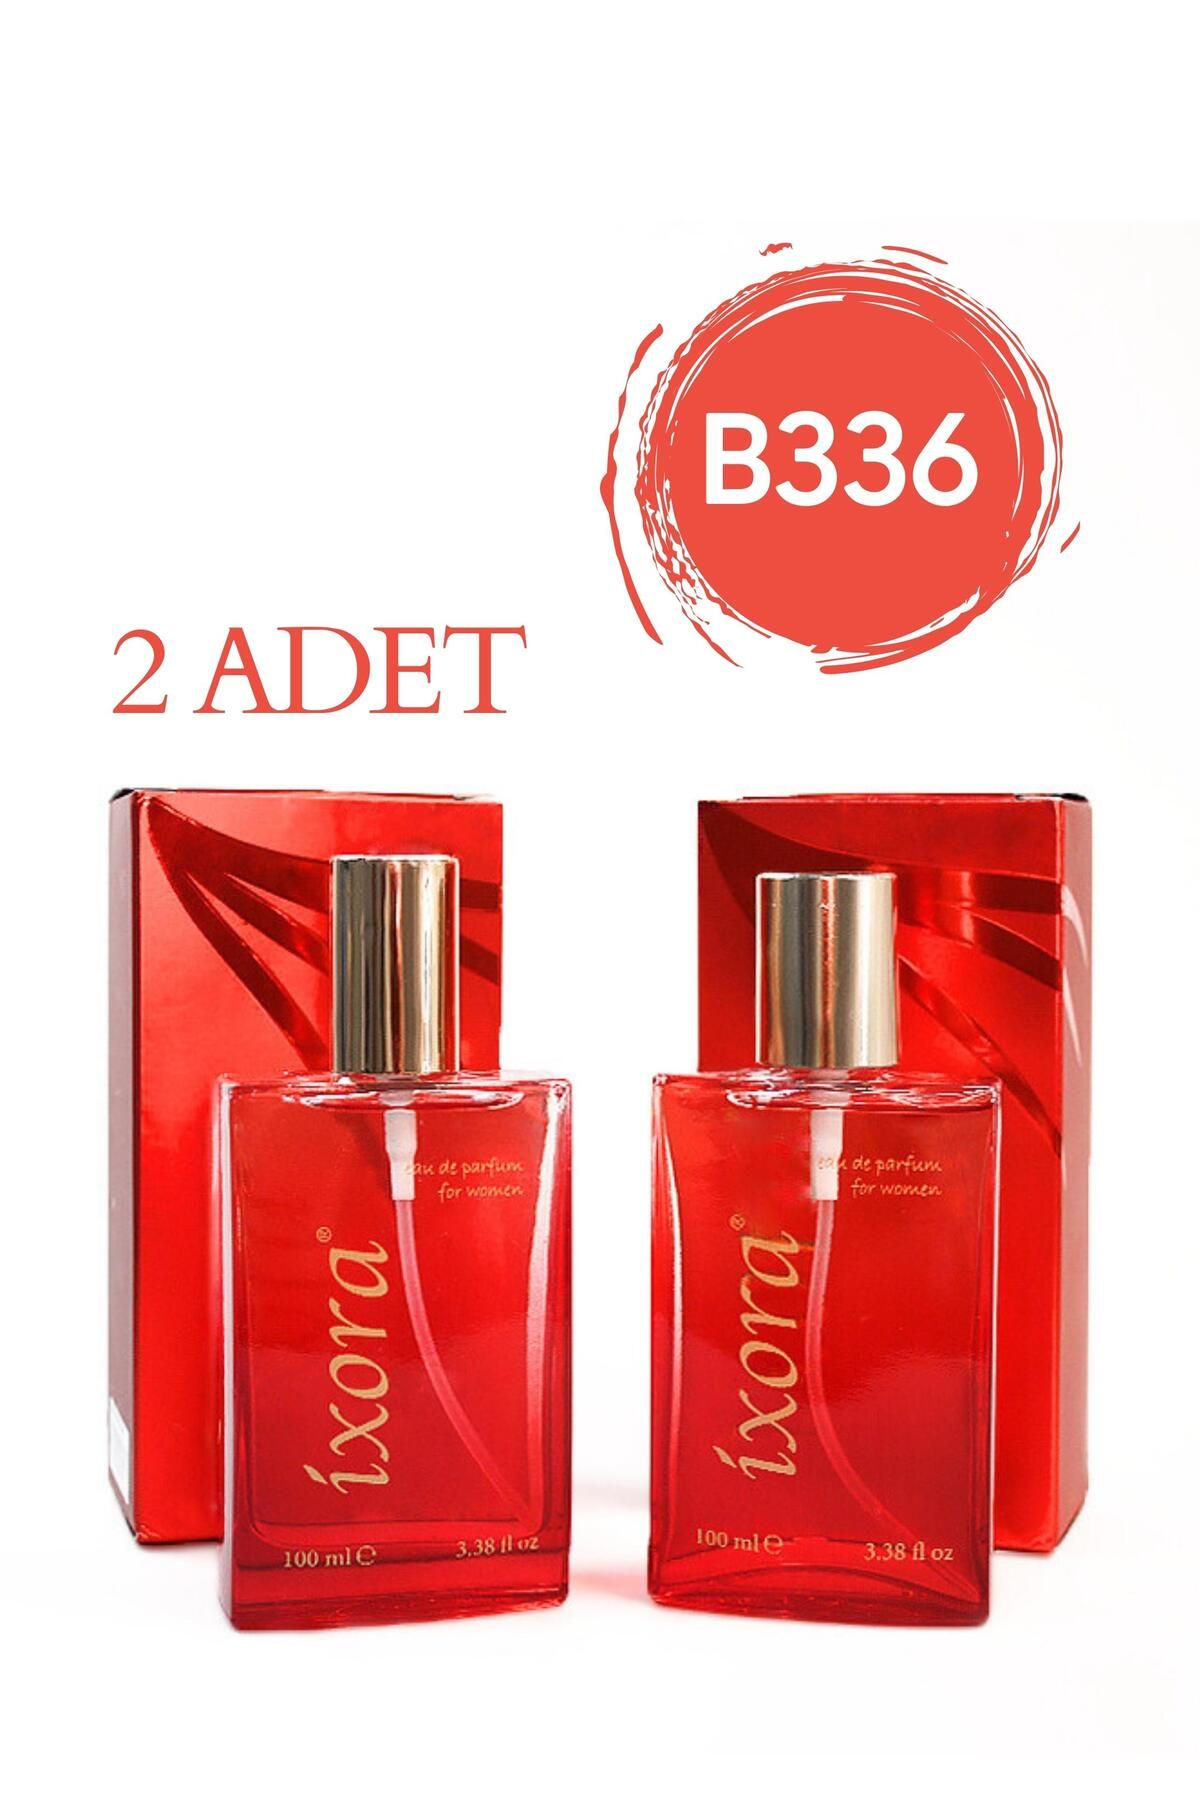 Ixora B336x2 (2 adet ) Kadın Parfüm Purple 100 ml